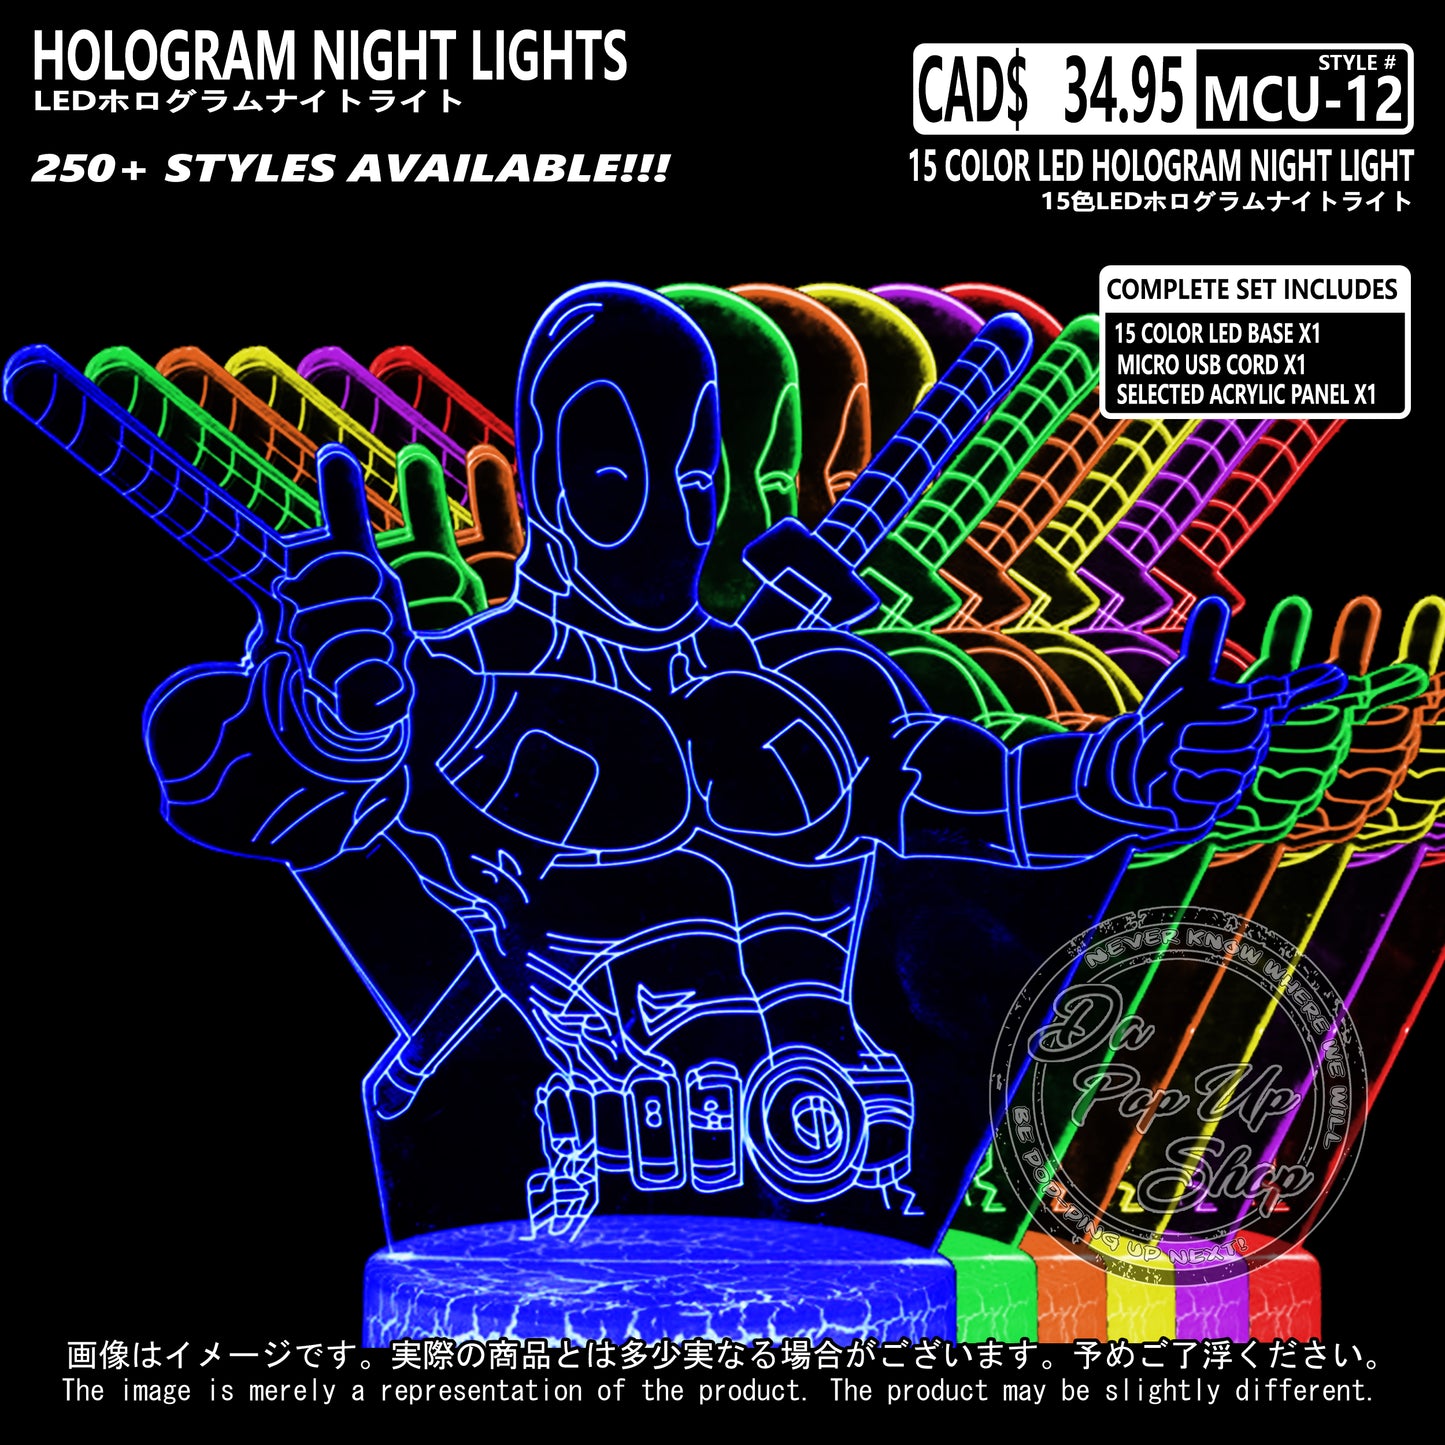 (MCU-12) MCU Marvel Cinematic Universal Hologram LED Night Light